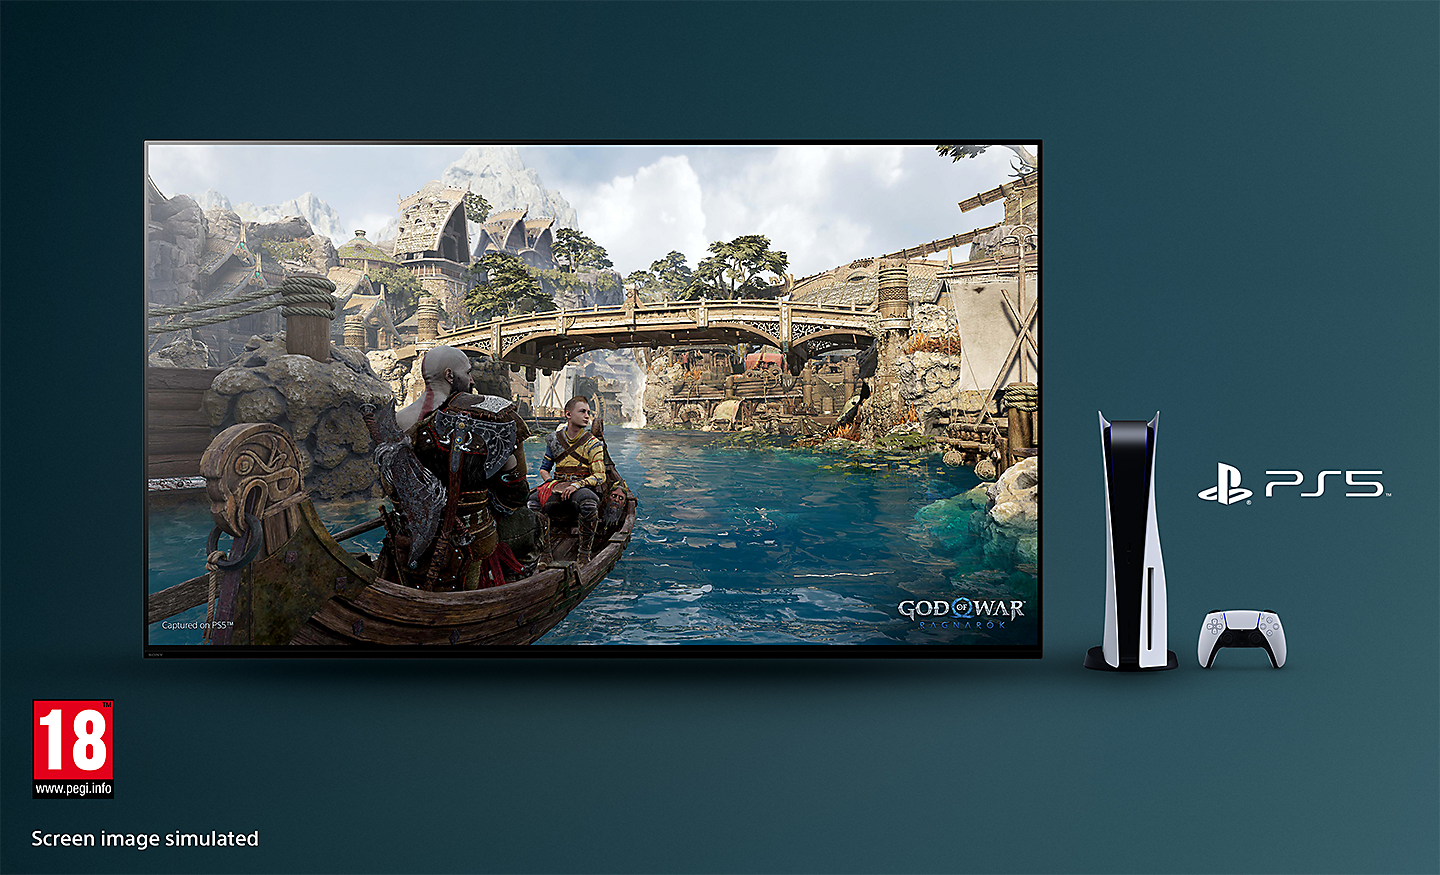 BRAVIA televízió képernyőképpel a God of War: Ragnarök című játékból, amelyen egy csónak látható egy folyón, a háttérben egy híddal, a tévétől jobbra egy PS5™ konzol, egy kontroller és a PS5™ logója